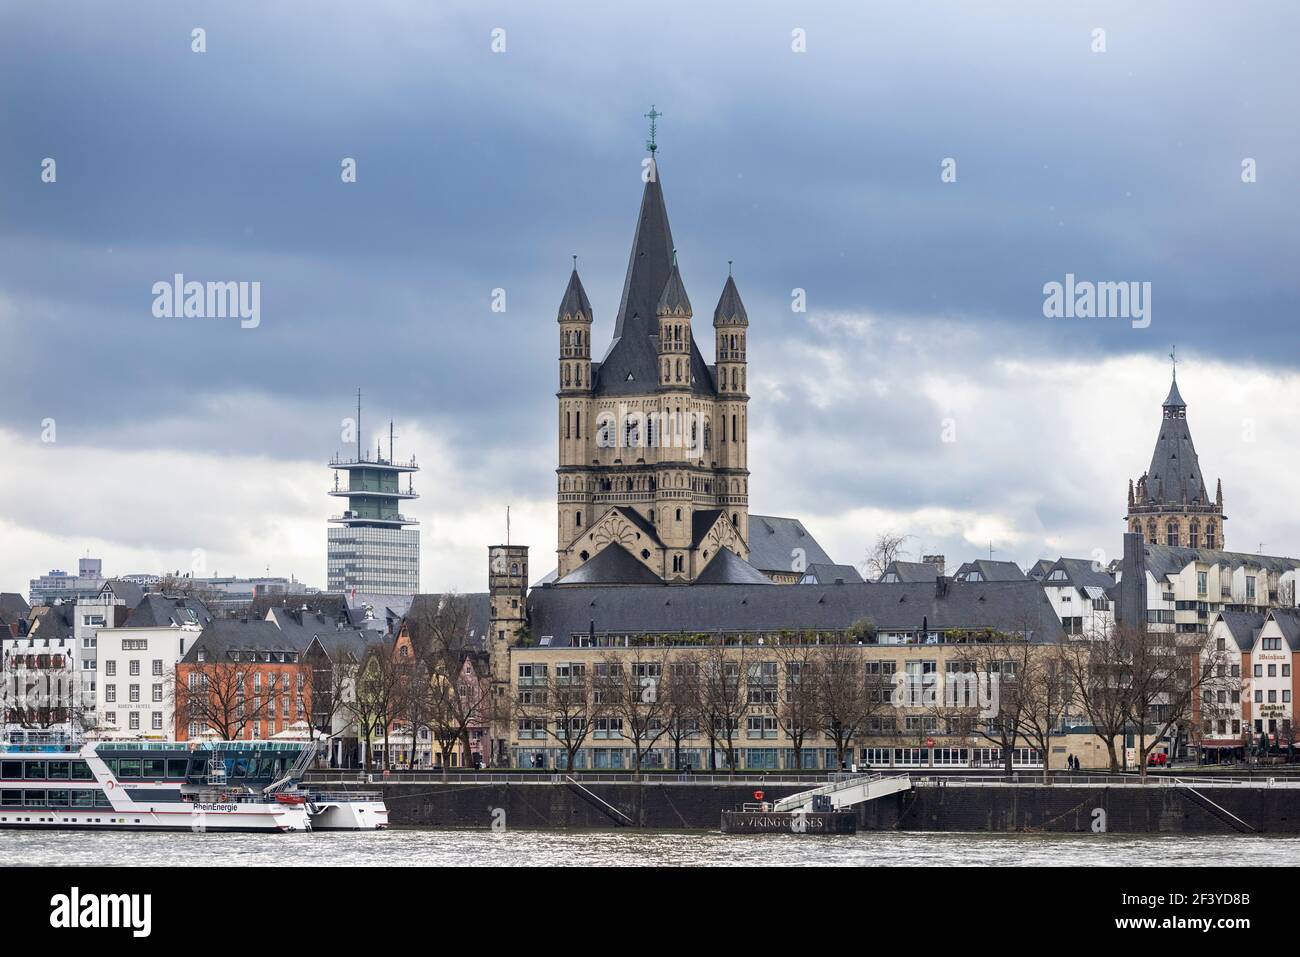 La grande cattedrale di San Martino è un importante edificio di Colonia, ma è ombreggiata dal Duomo di Colonia nello skyline della città. Foto Stock